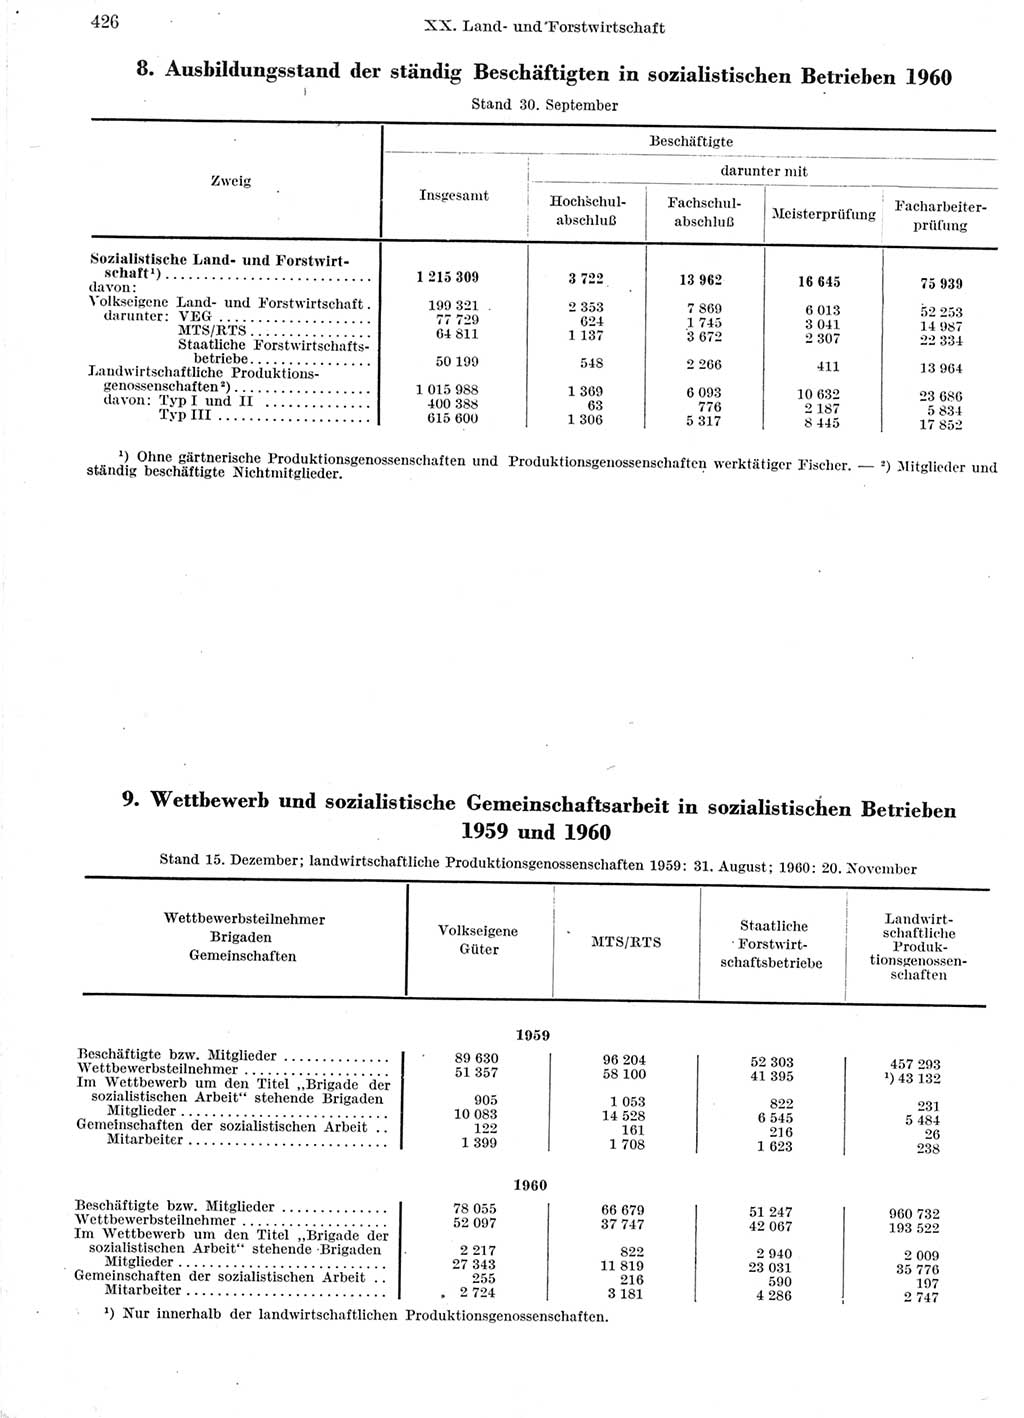 Statistisches Jahrbuch der Deutschen Demokratischen Republik (DDR) 1960-1961, Seite 426 (Stat. Jb. DDR 1960-1961, S. 426)